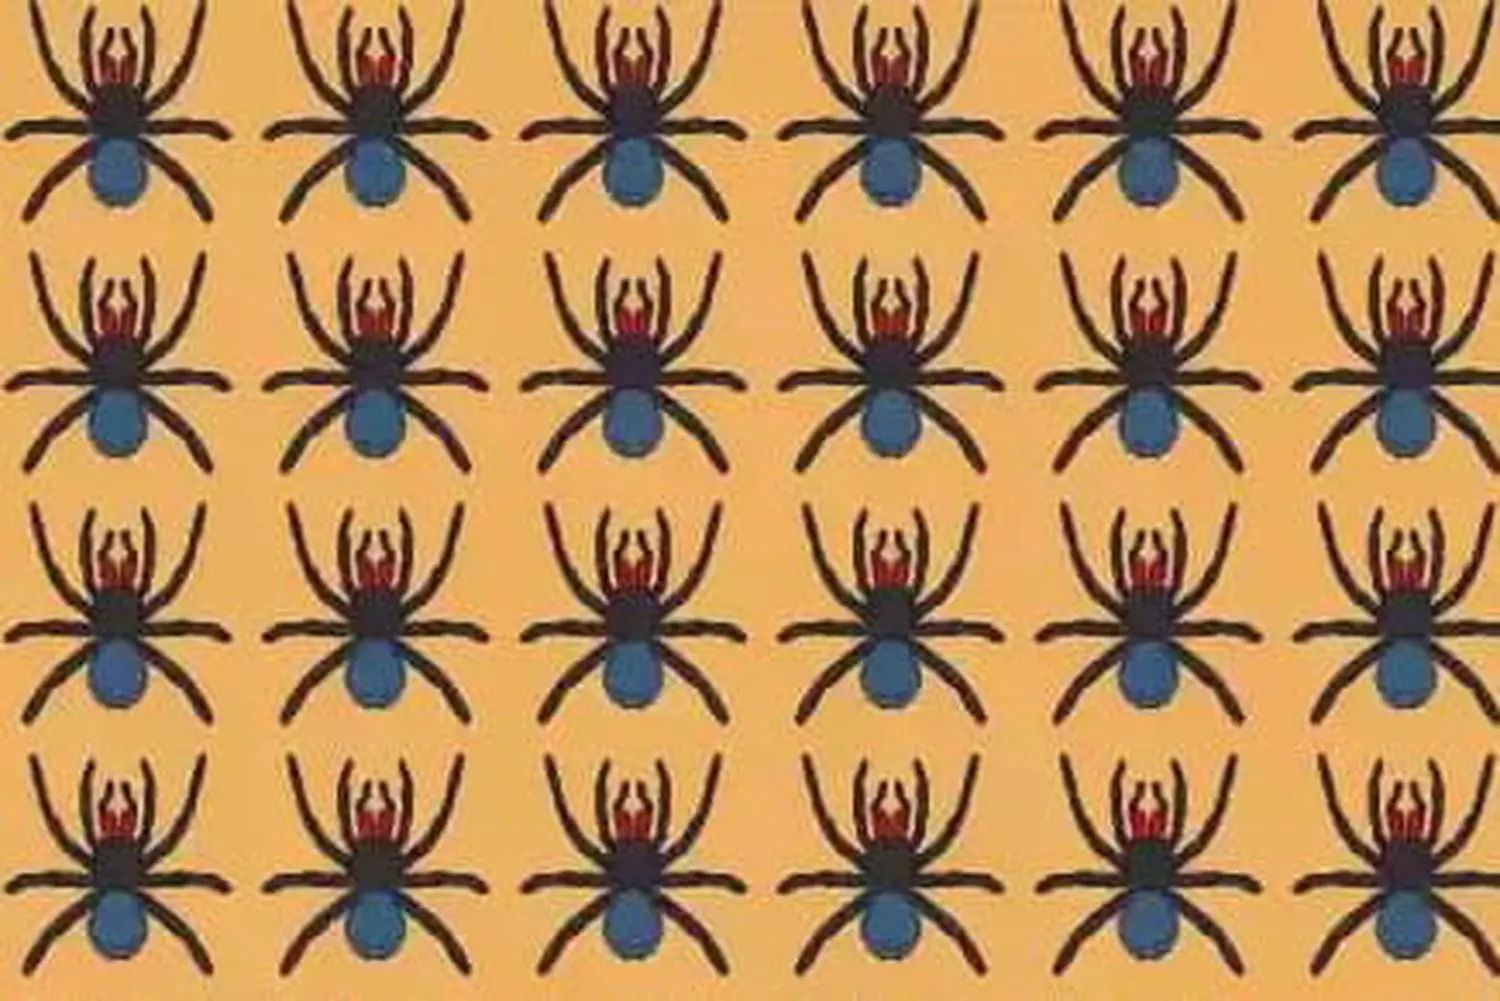 Você é Perspicaz? Demonstre localizando a aranha diferente em apenas 12 segundos!